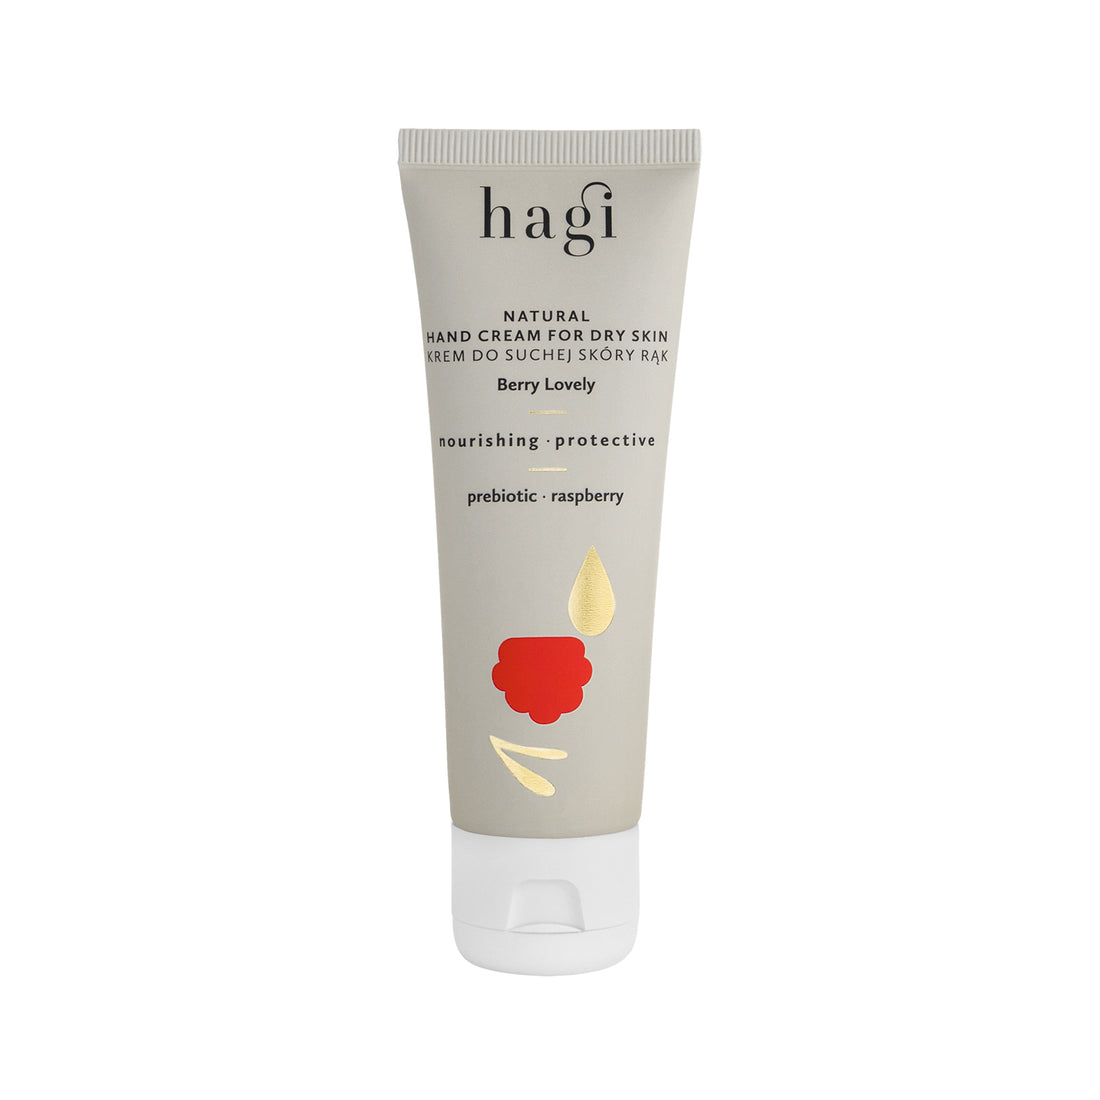 Hagi - Natural Hand Cream For Dry Skin [Berry Lovely]